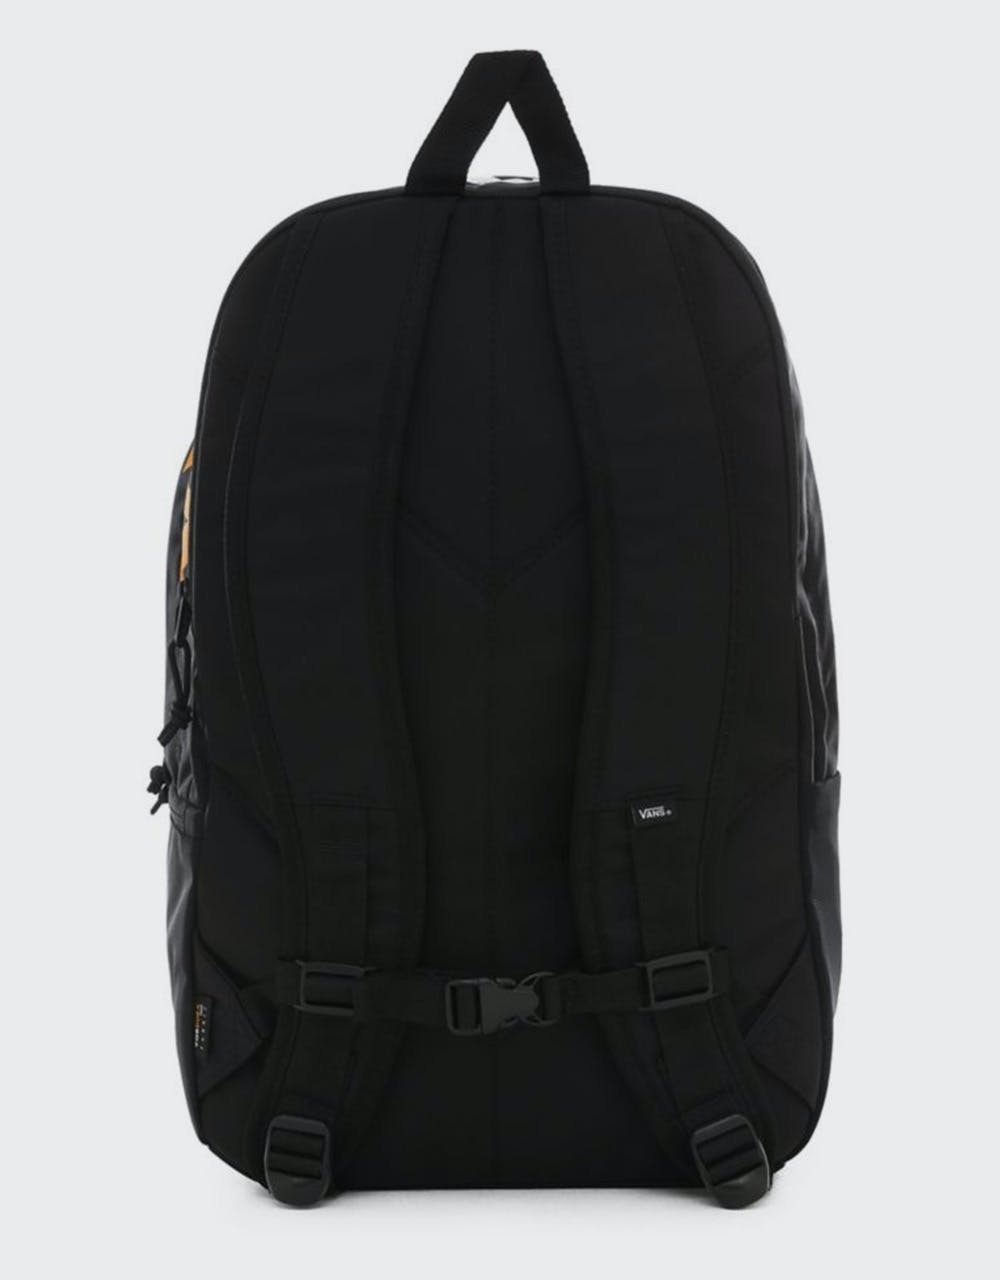 Vans Snag Plus Backpack - Black Cordura